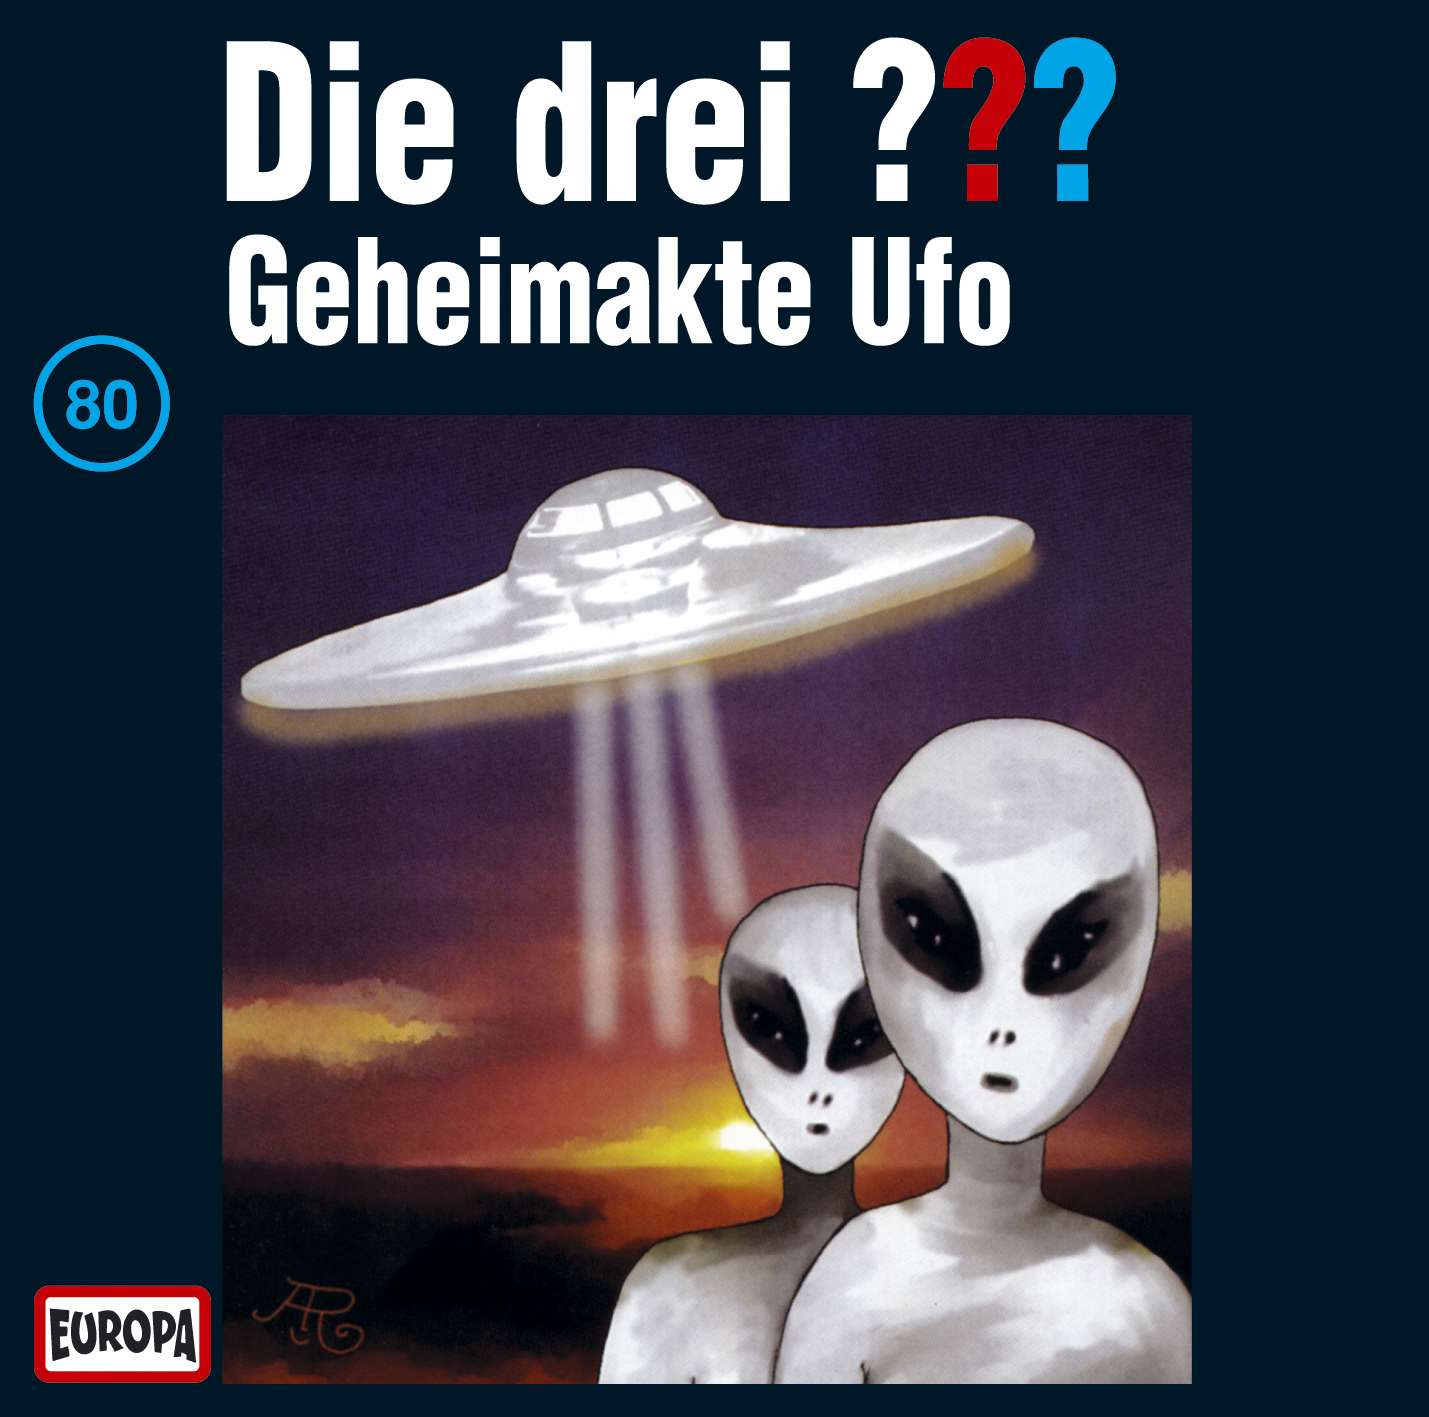 Die drei ???: Geheimakte Ufo